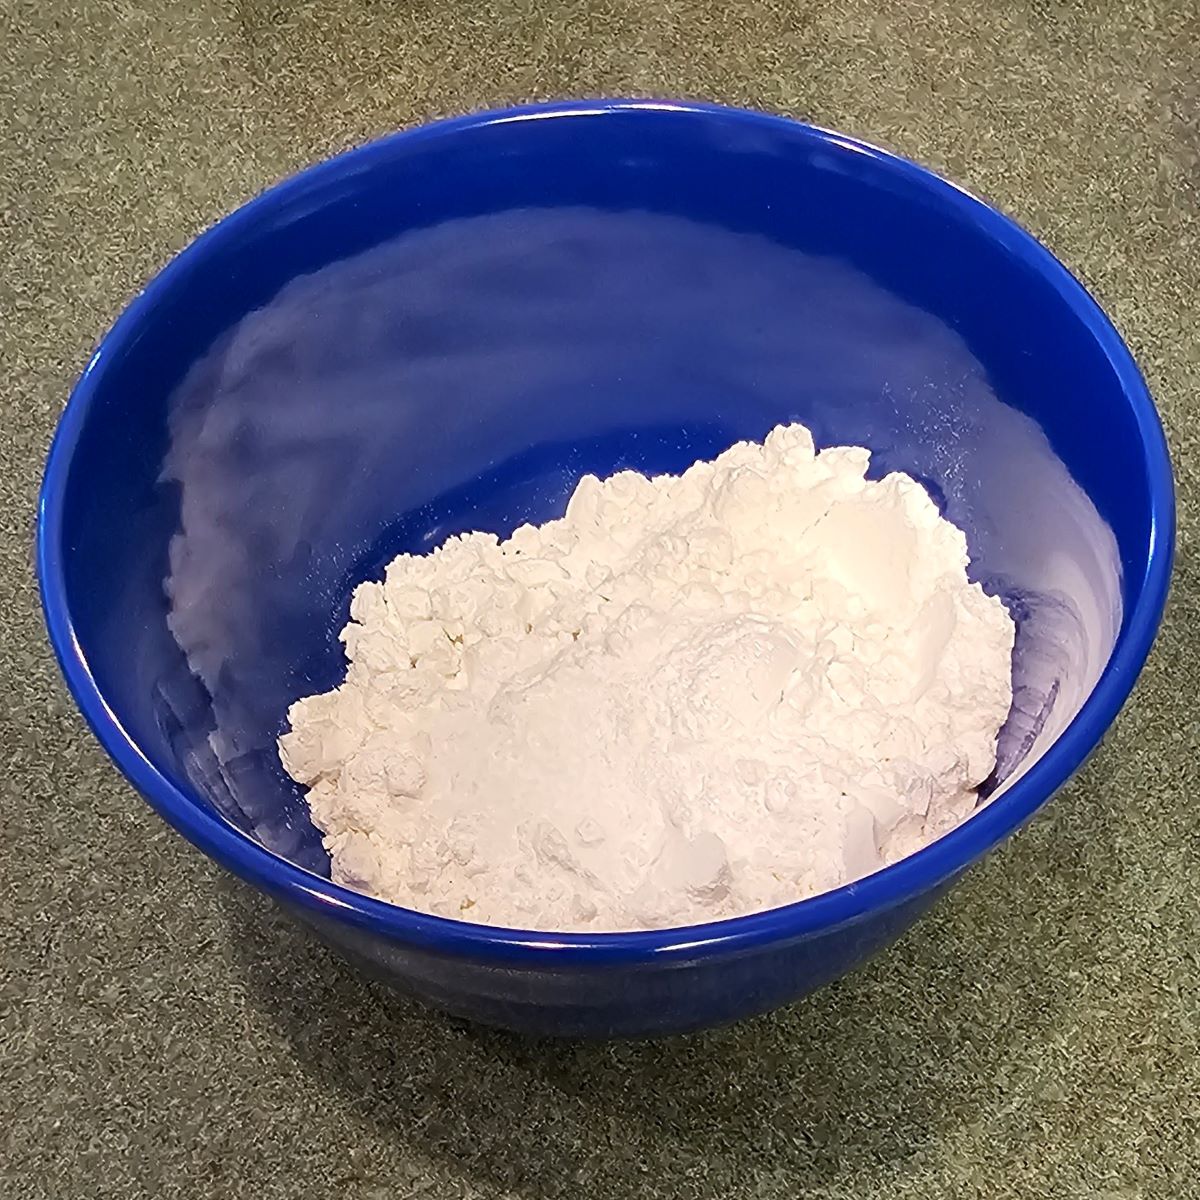 German pancakes recipe dry ingredients in a bowl: flour, baking powder and salt.